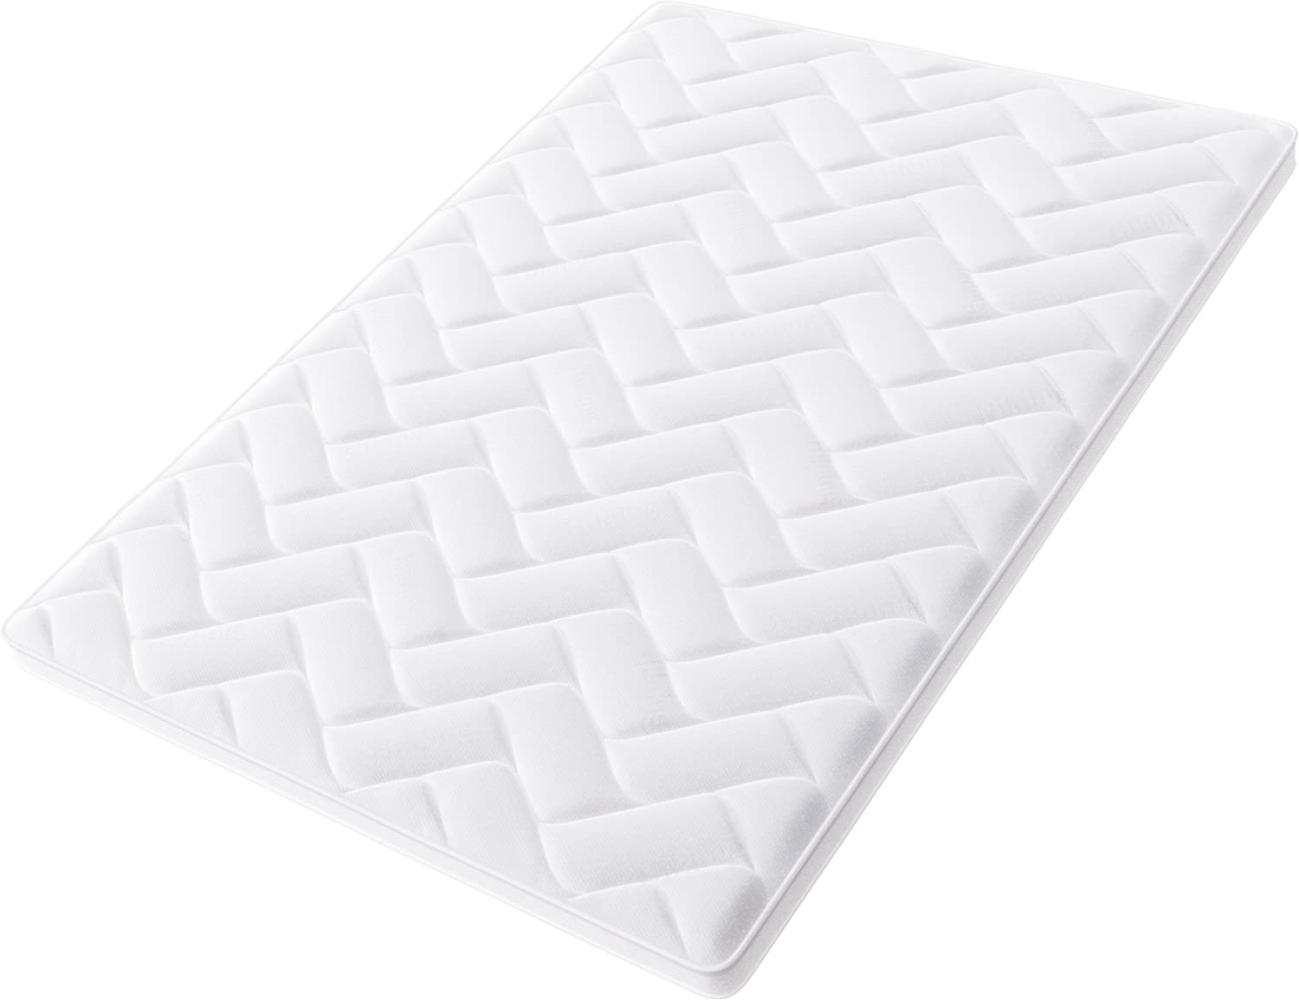 Hilding Sweden Pure 50 Matratzentopper, Mittelharte Matratzenauflage für besseren Schlafkomfort, Schaumstoff, Weiß, 200 x 100 cm Bild 1